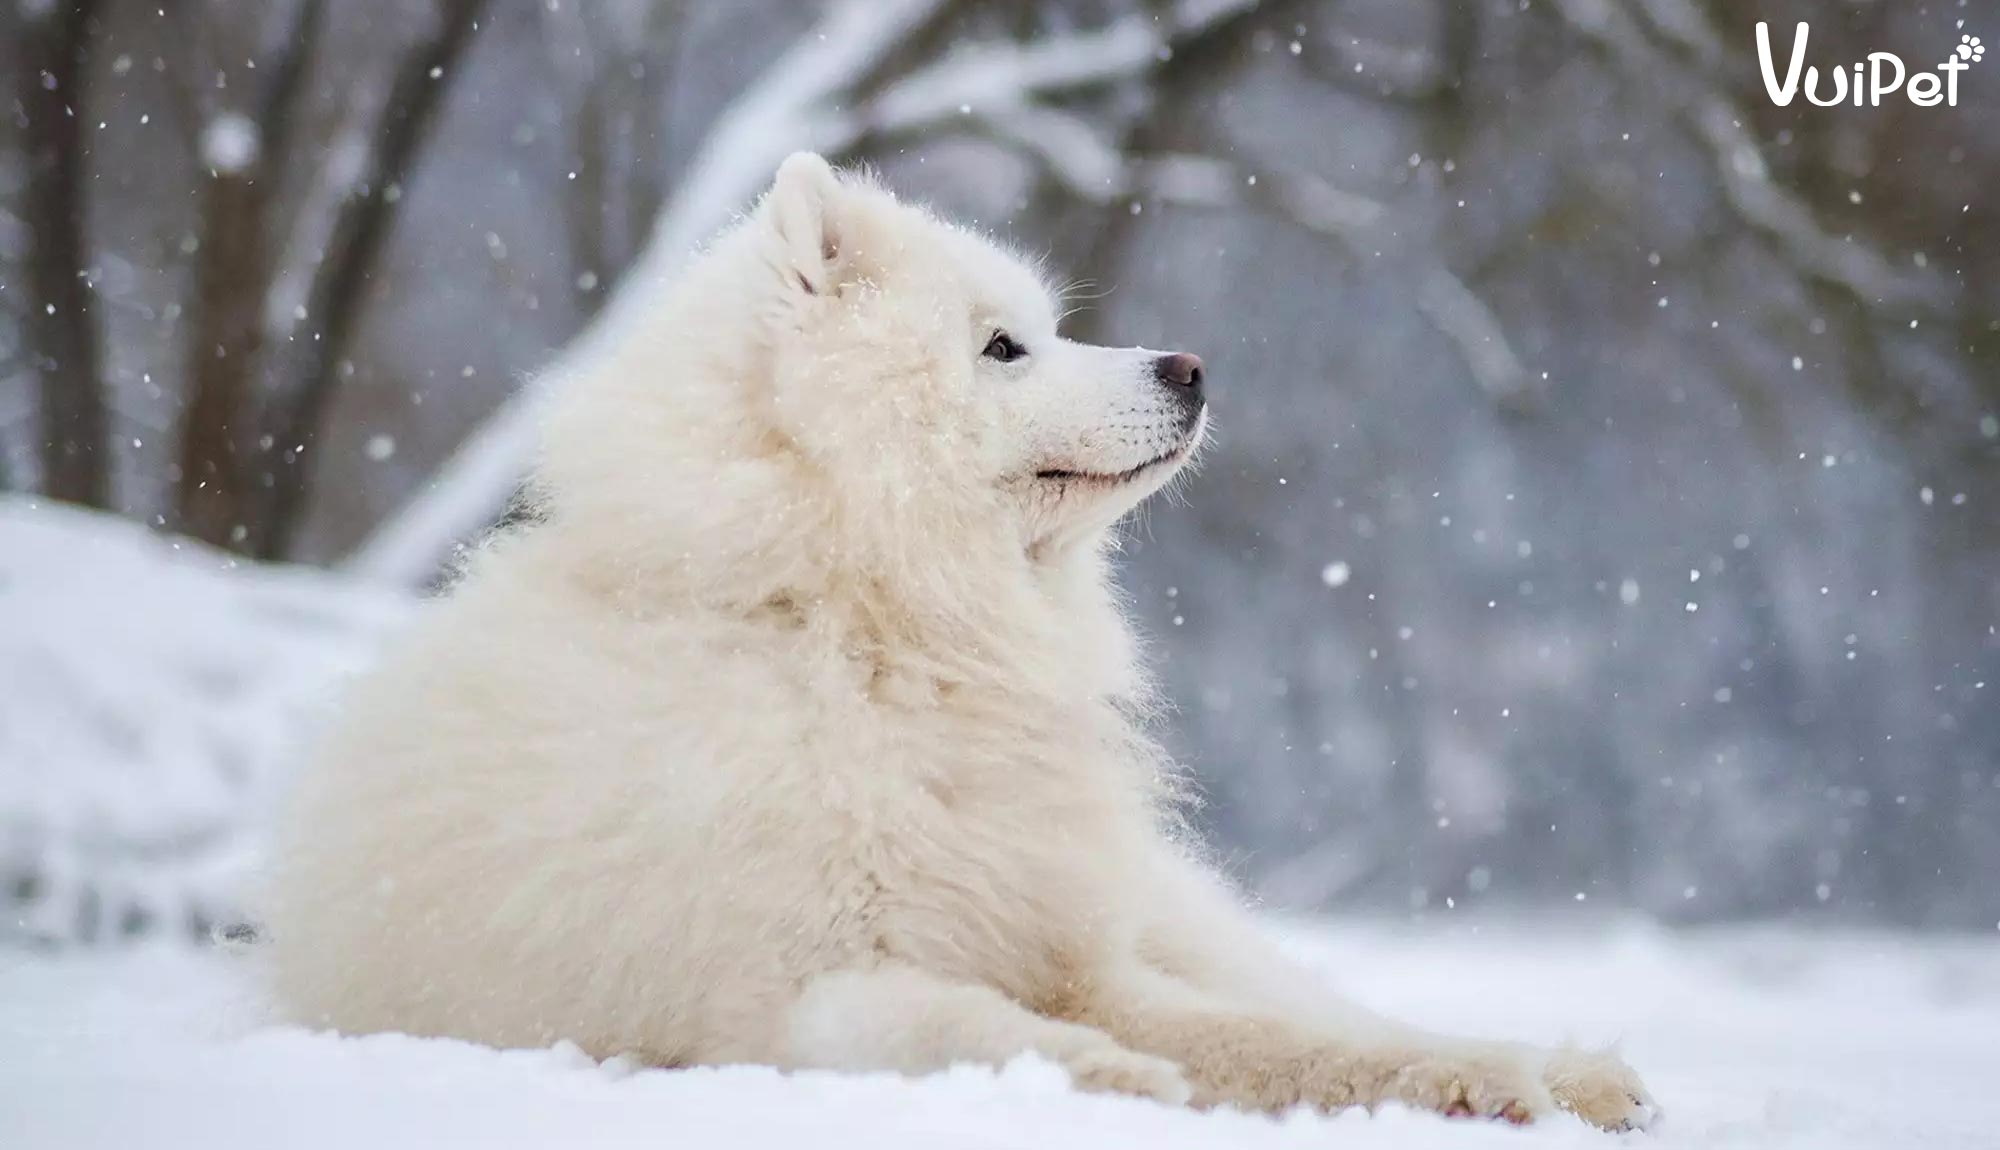 Chó Alaska Trắng: Với bộ lông trắng tuyệt đẹp, chó Alaska trắng sẽ mang đến cho bạn một trải nghiệm đầy mới mẻ và thú vị. Bạn sẽ cảm thấy ngạc nhiên trước tính cách thông minh và trung thành của chúng.